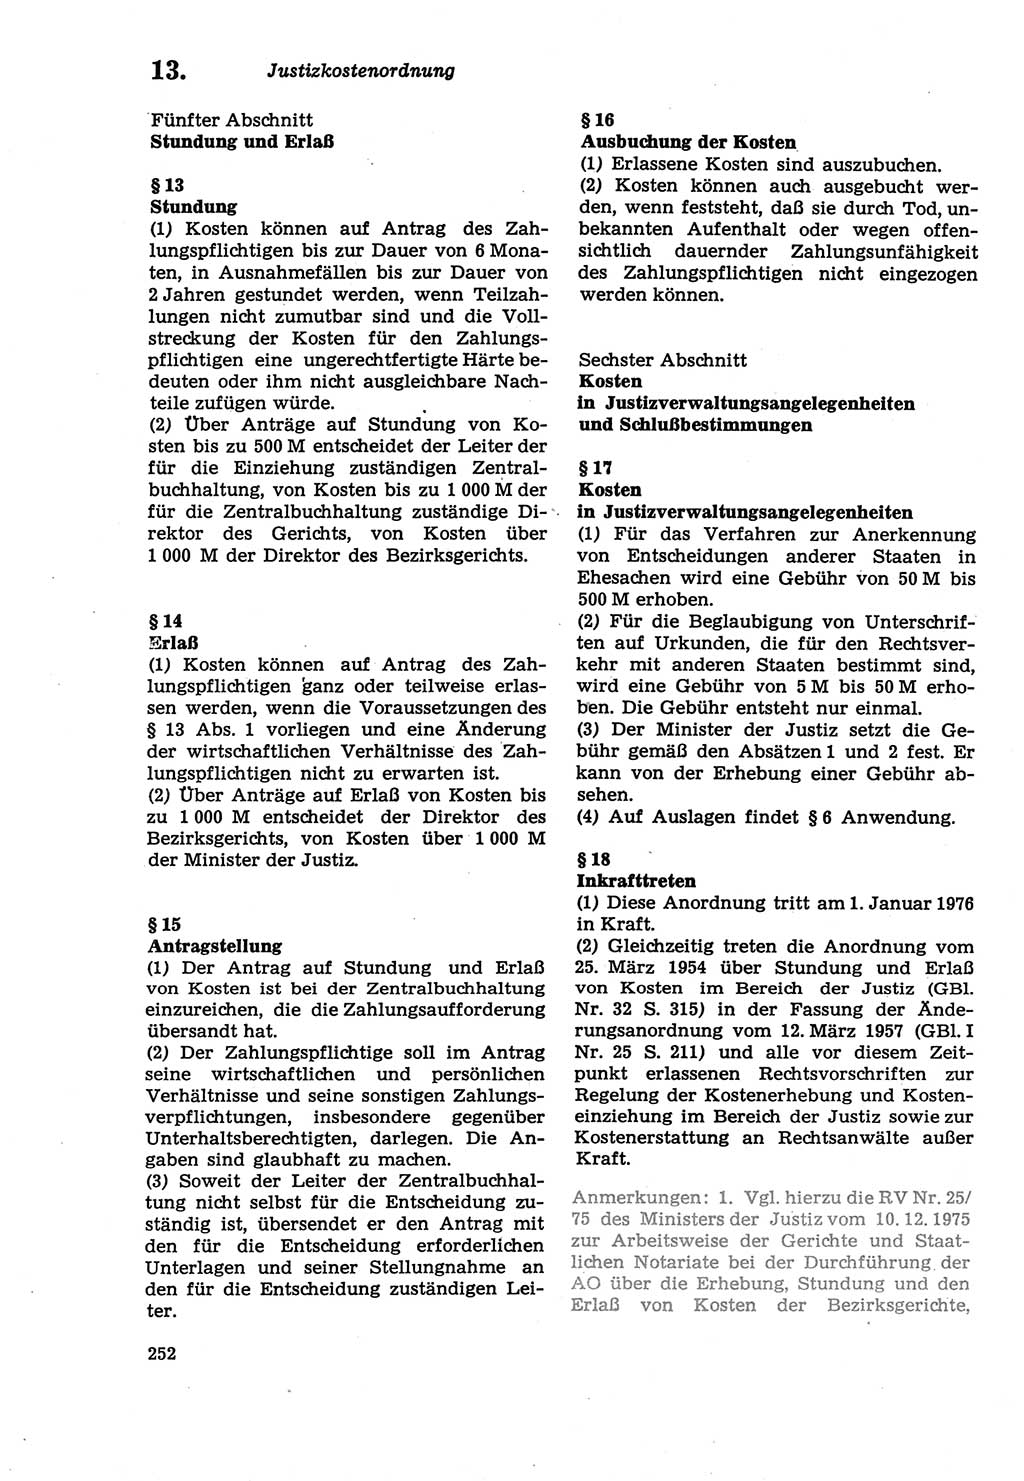 Strafprozeßordnung (StPO) der Deutschen Demokratischen Republik (DDR) sowie angrenzende Gesetze und Bestimmungen 1979, Seite 252 (StPO DDR Ges. Best. 1979, S. 252)